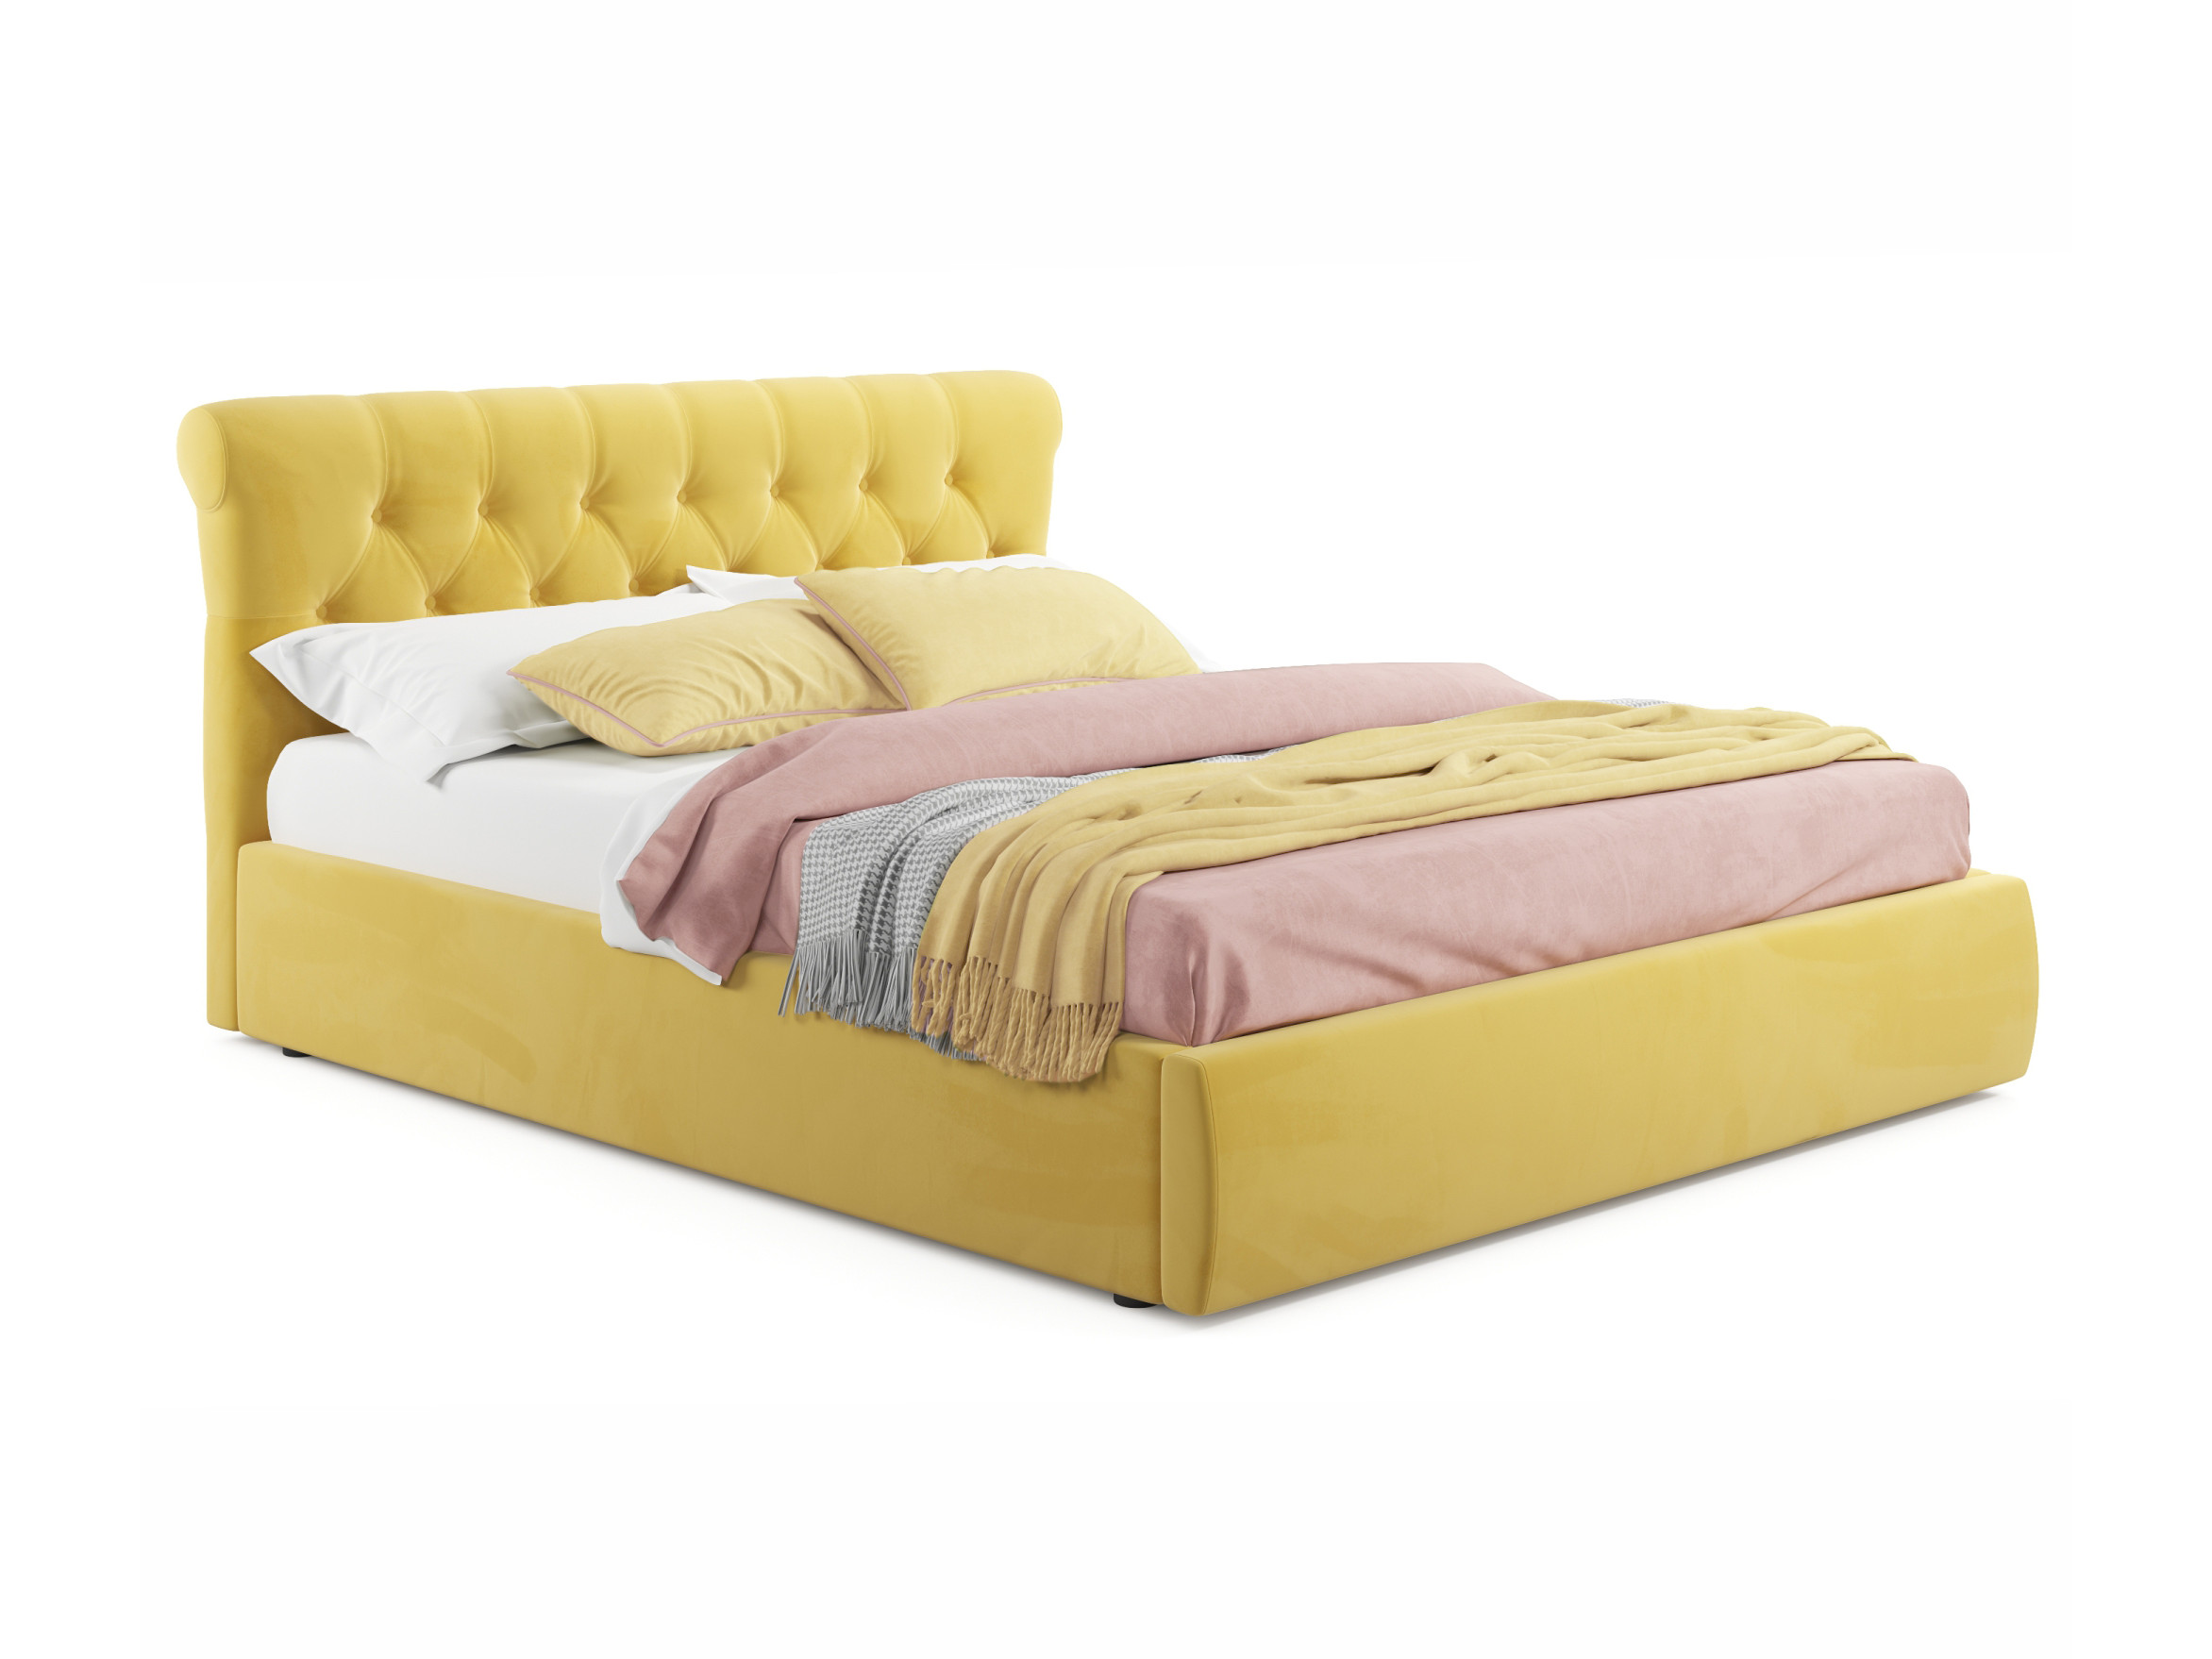 Мягкая кровать Ameli 1800 желтая с ортопедическим основанием желтый, Желтый, Велюр, ДСП мягкая кровать ameli 1600 желтая с ортопедическим основанием желтый желтый велюр дсп